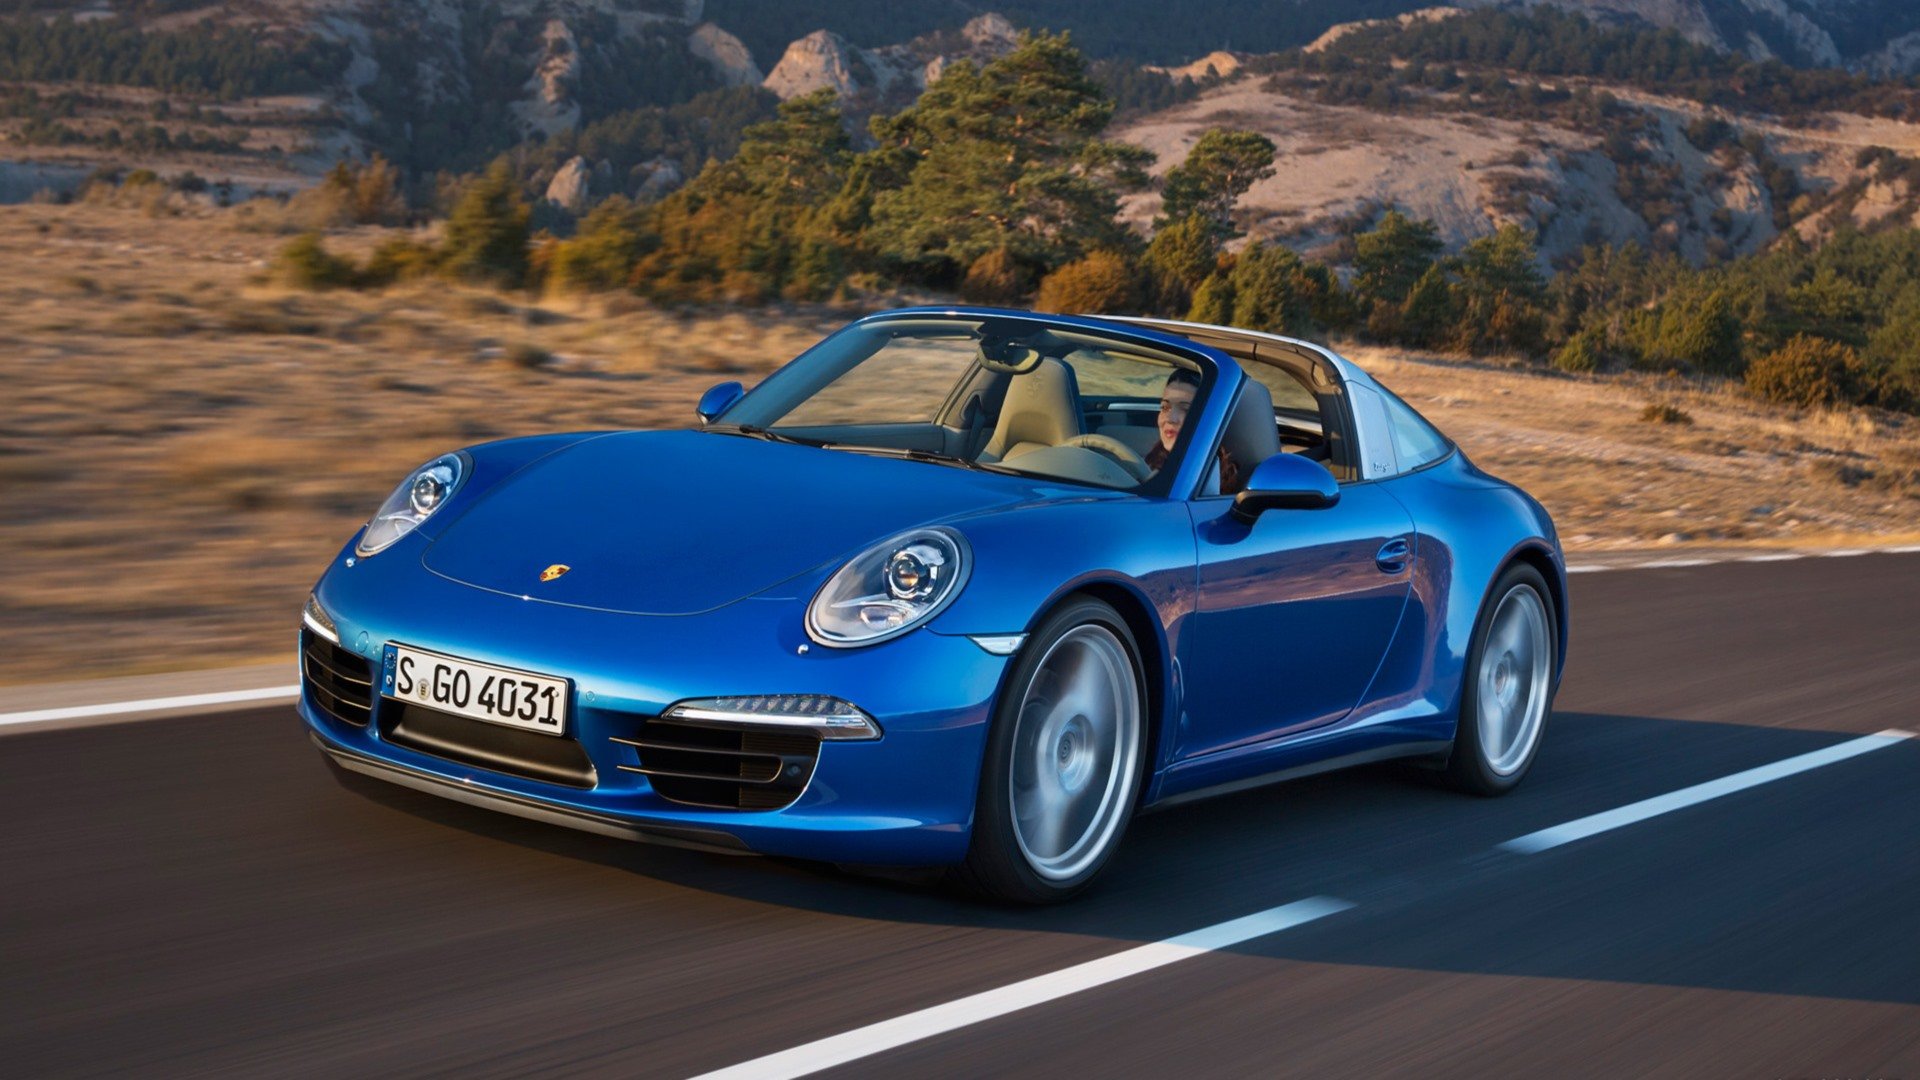 Best Porsche 911 Targa wallpaper ID:383544 for High Resolution full hd 1920x1080 desktop